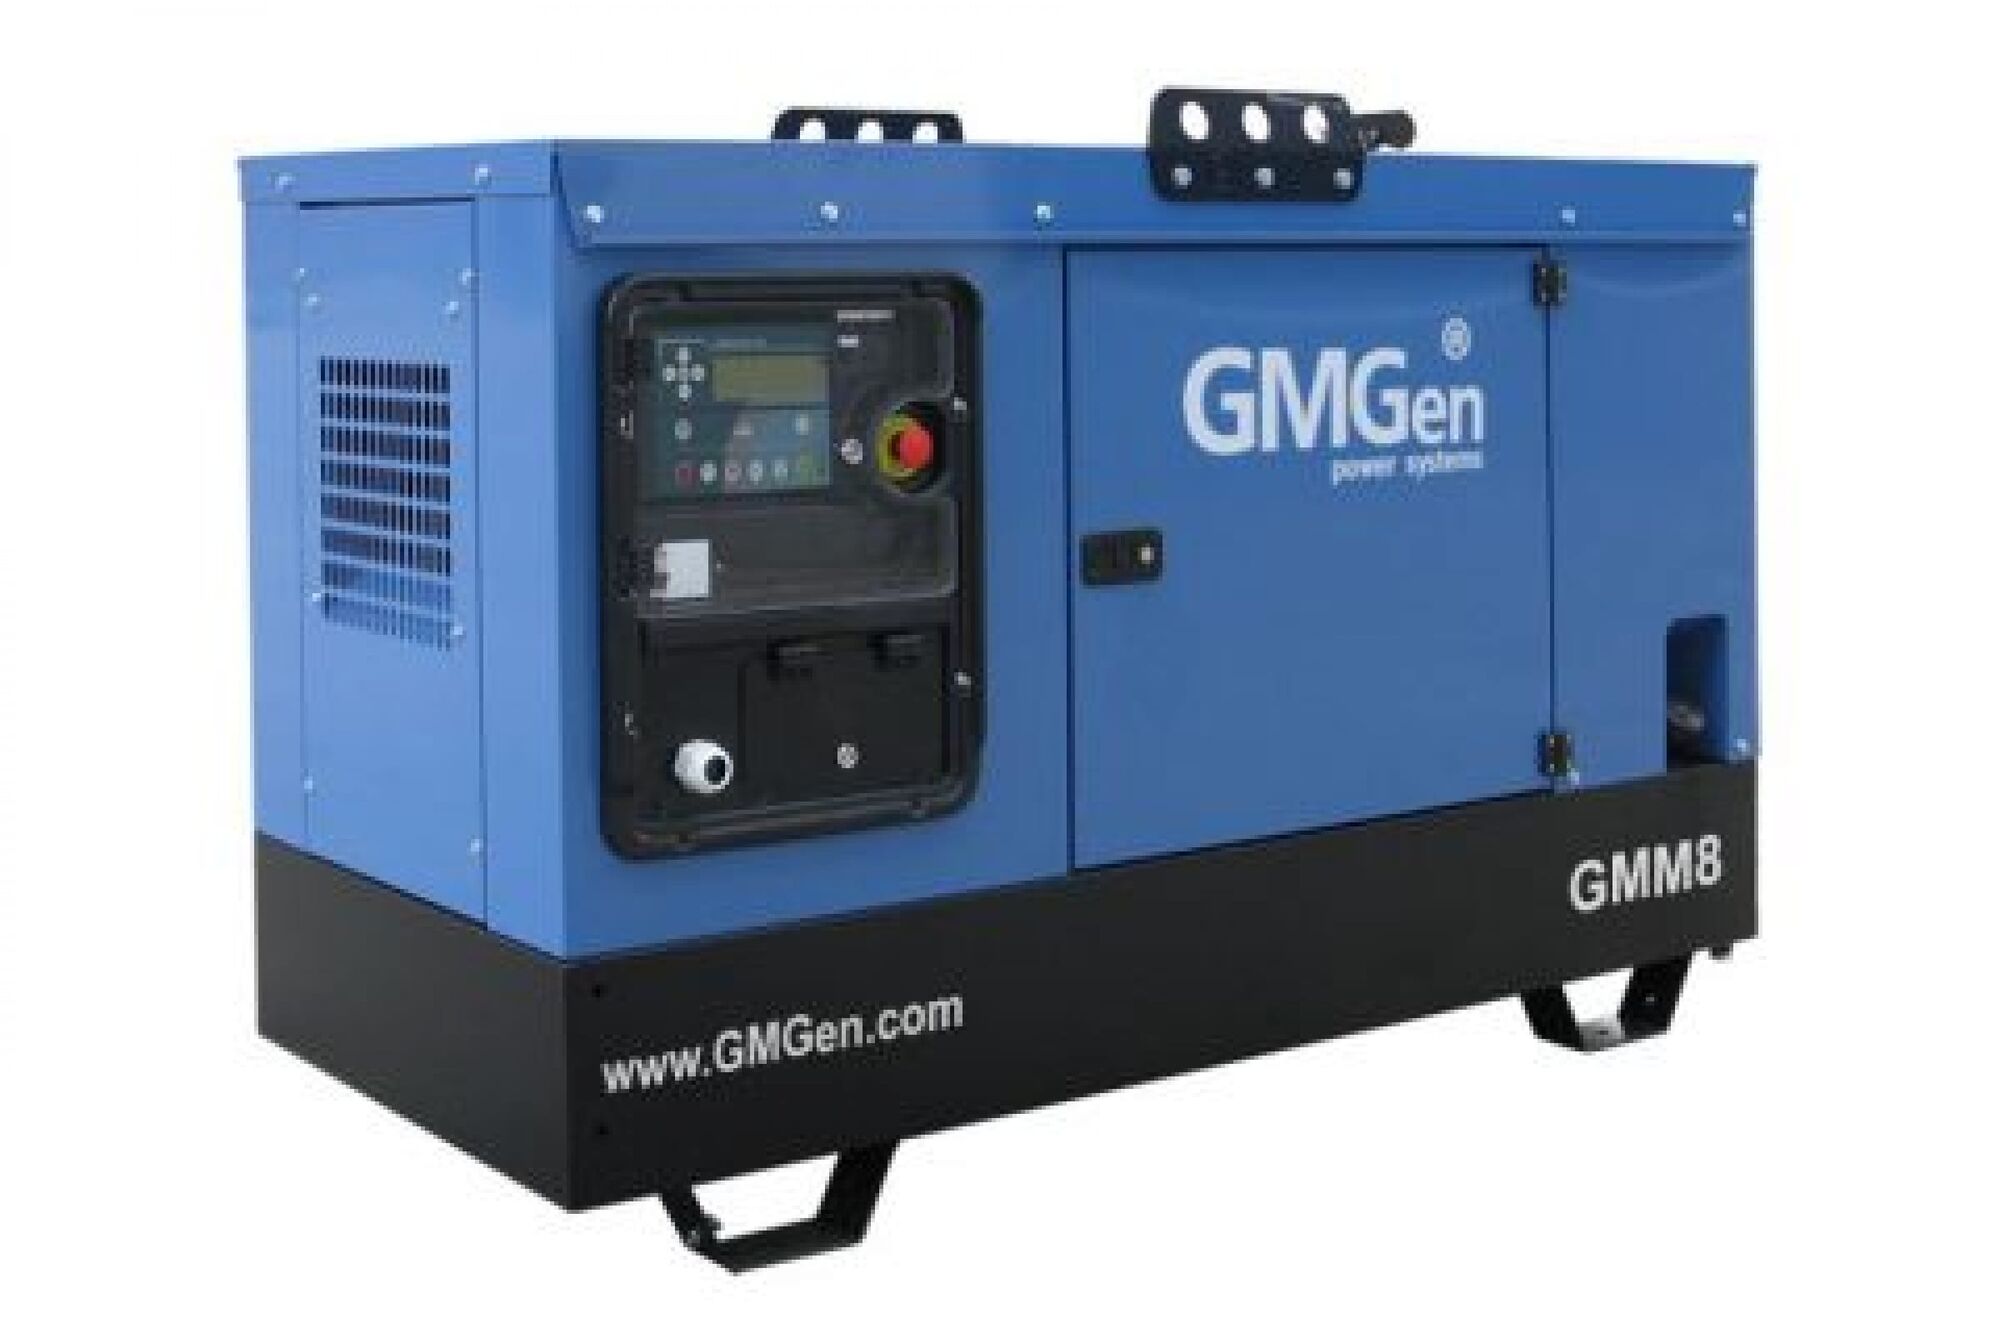 Дизель генератор GMGen Power Systems GMM8 5.6 кВт, 380/220 В в шумозащитном кожухе 502578